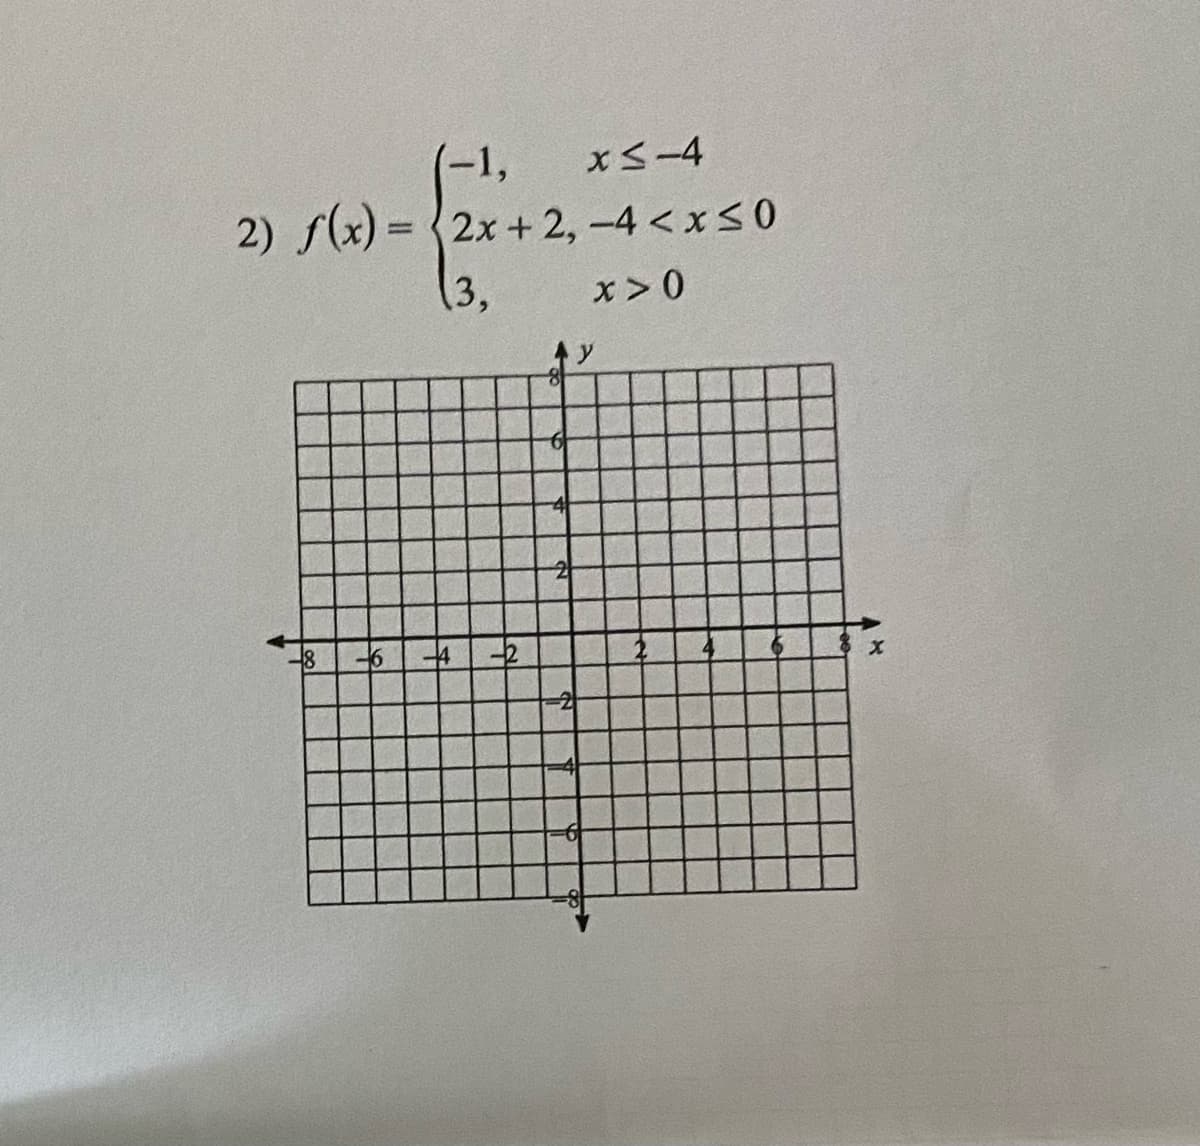 -1,
2) f(x) = {2x+ 2, -4 <xS0
xS-4
(3,
x>0
-4-2
